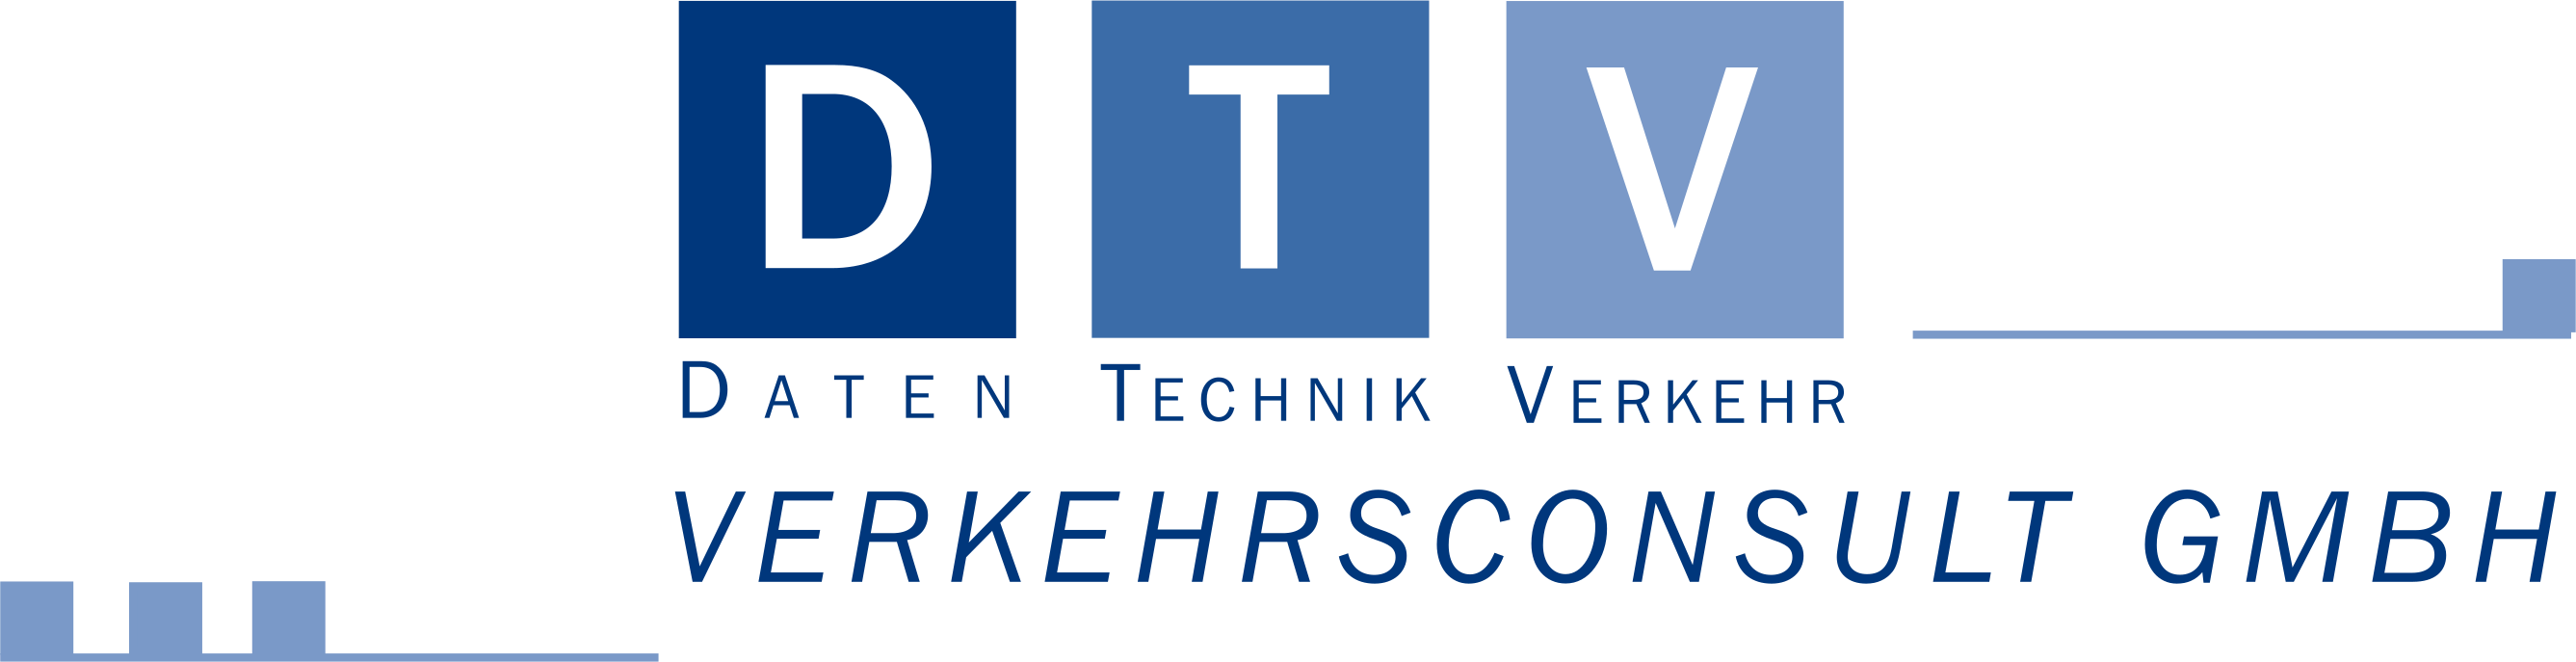 Logo DTV-Verkehrsconsult GmbH